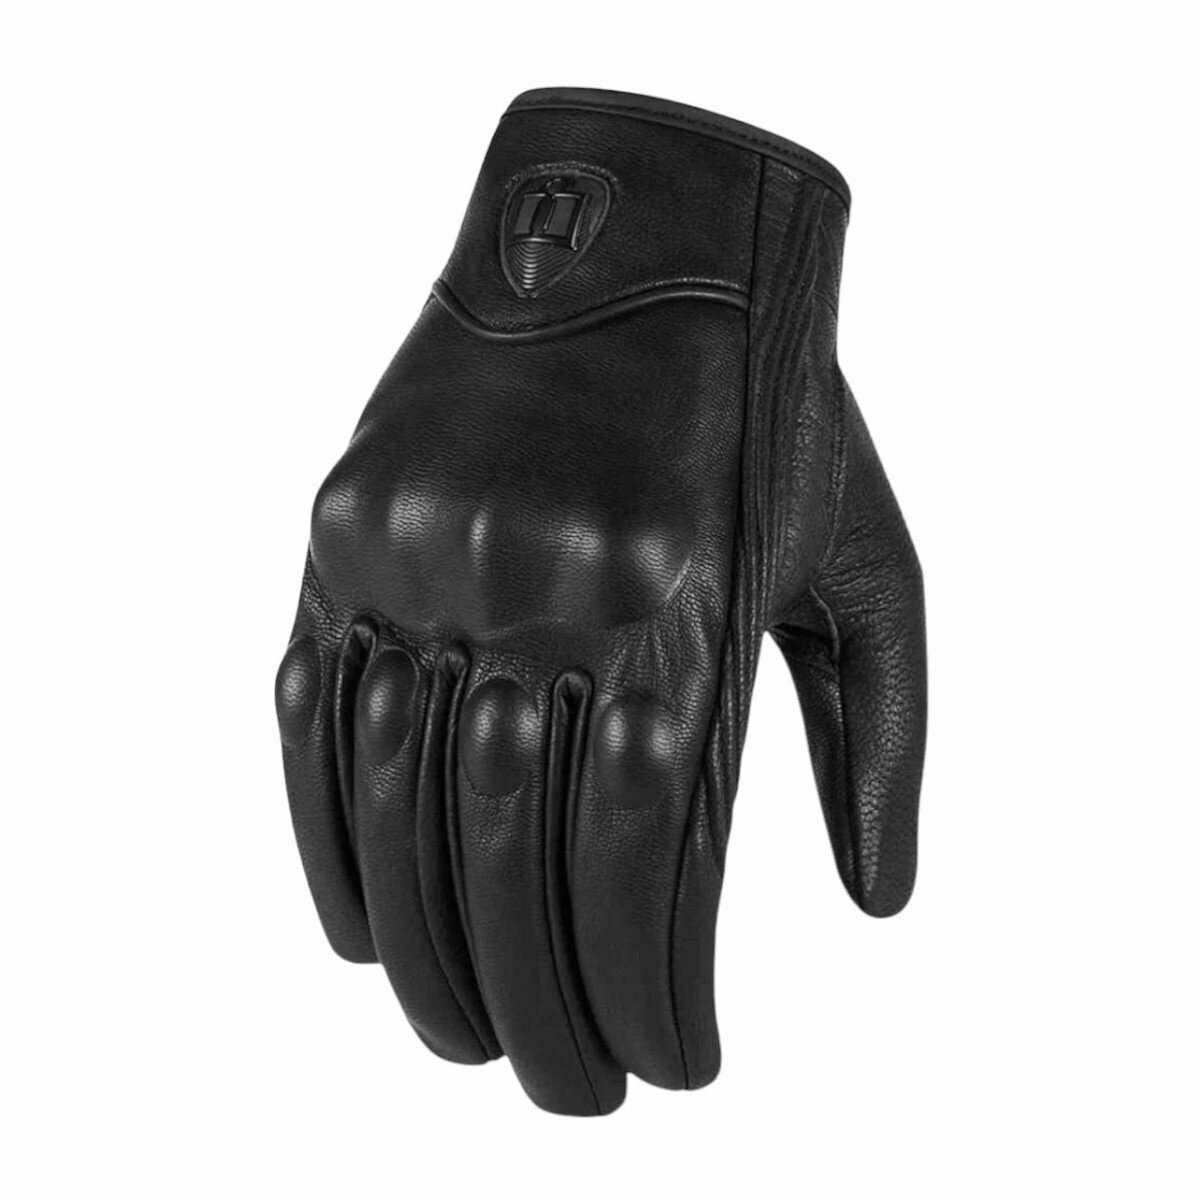 Мотоперчатки перчатки кожаные Y-12 для мотоциклиста на мотоцикл скутер мопед квадроцикл, черные, S